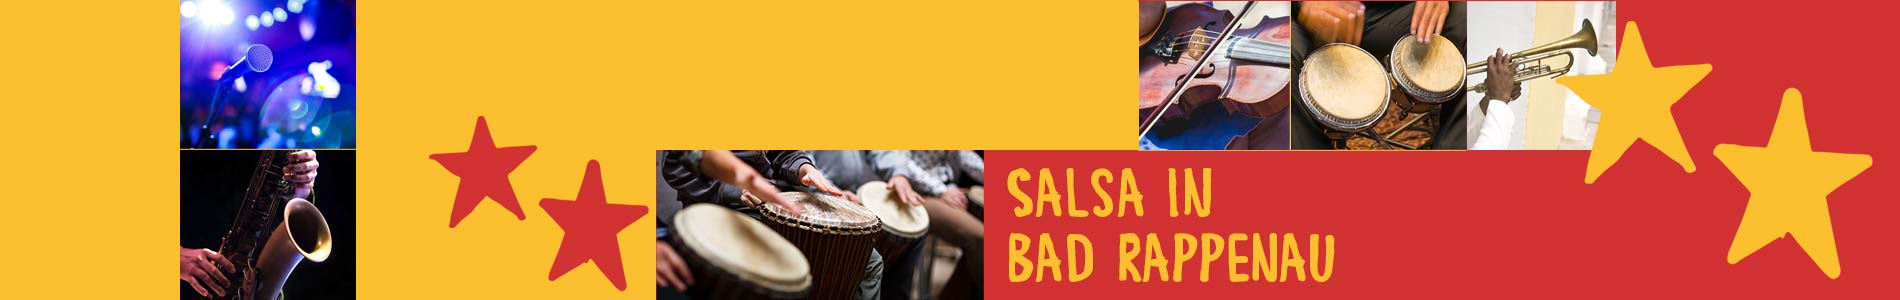 Salsa in Bad Rappenau – Salsa lernen und tanzen, Tanzkurse, Partys, Veranstaltungen